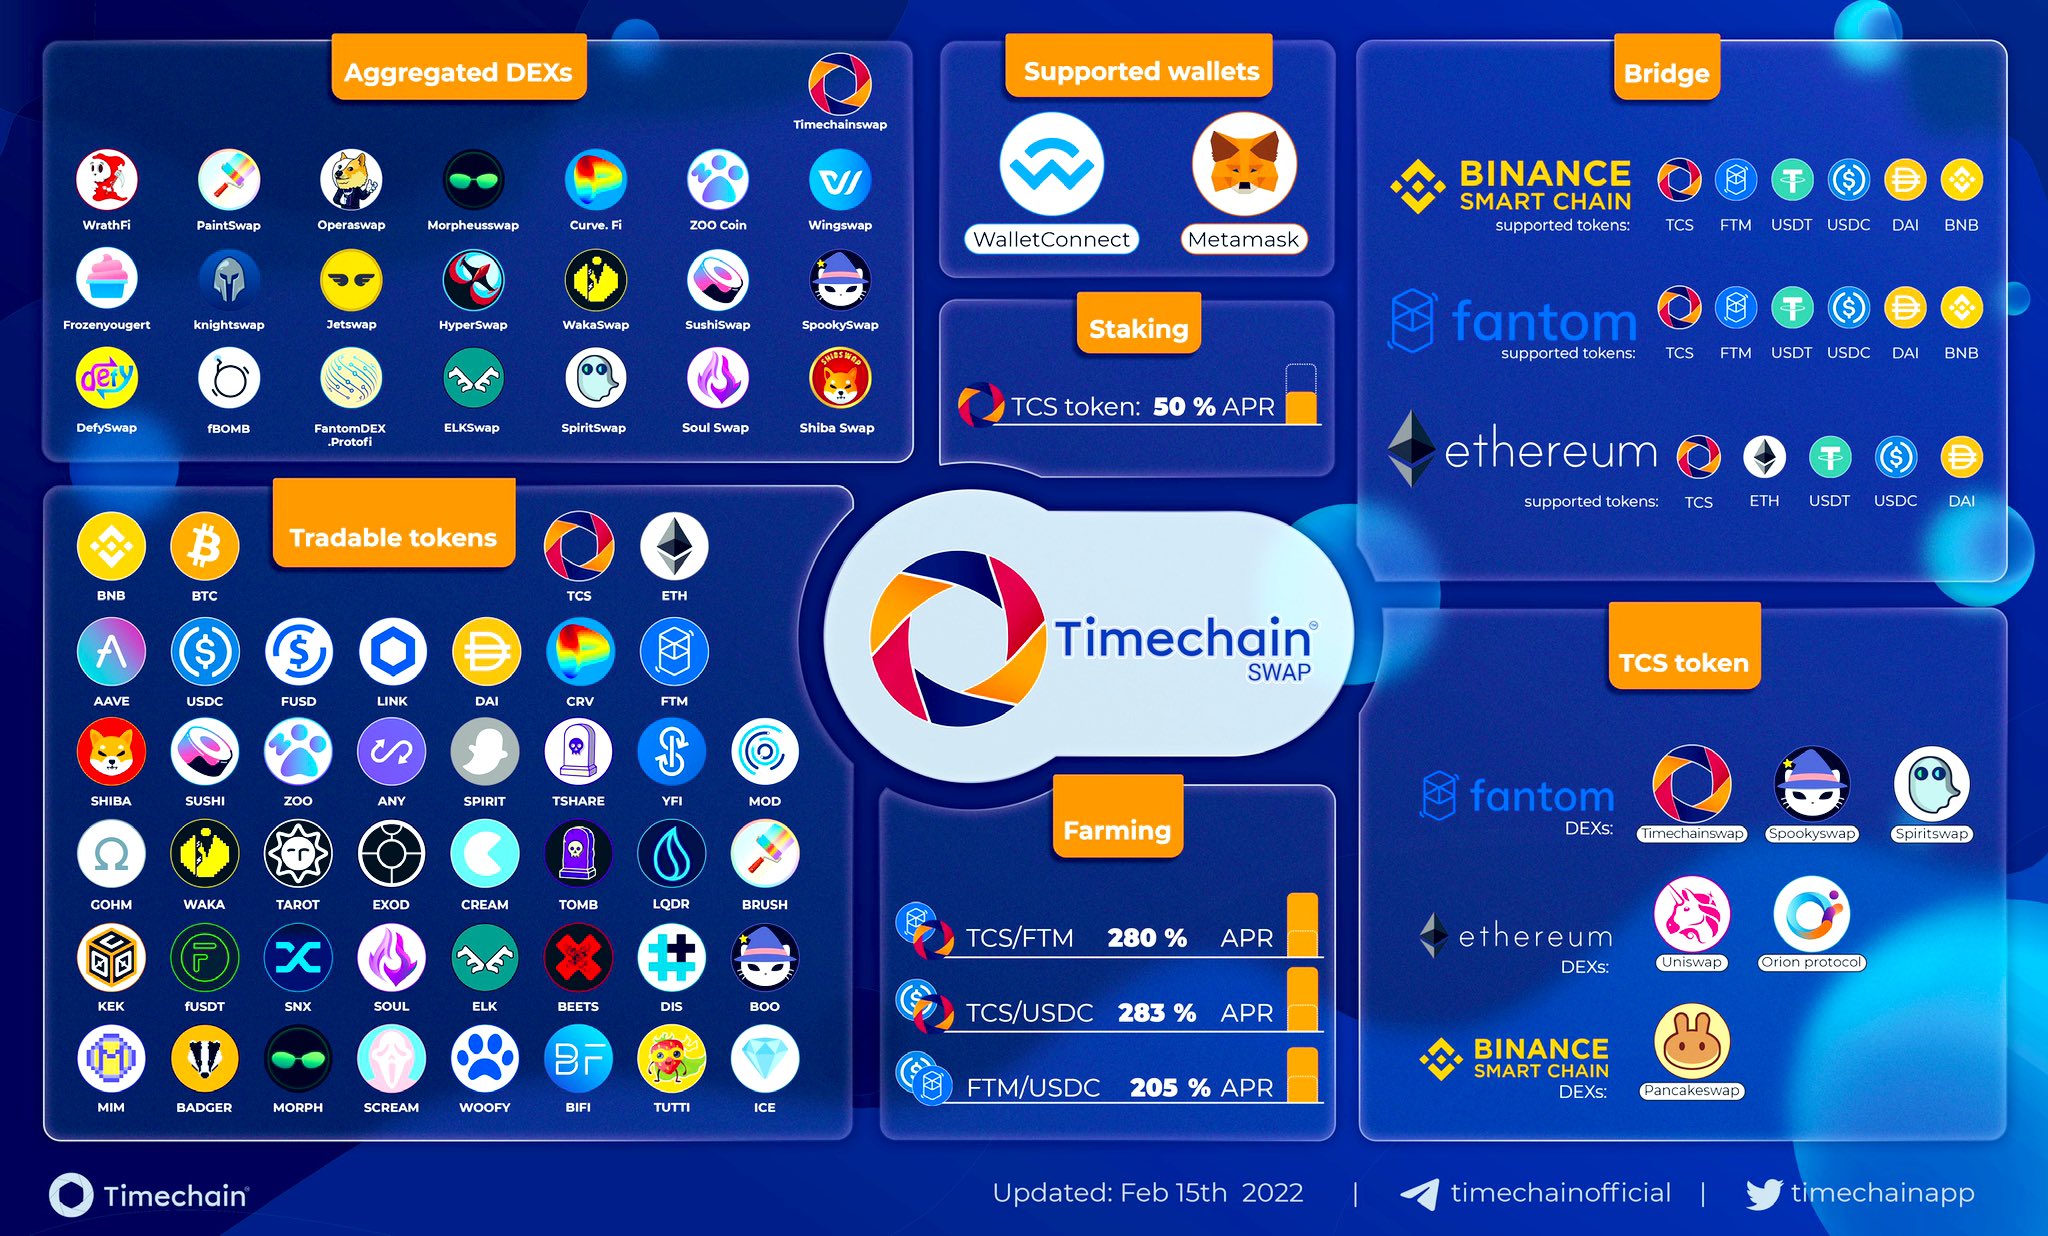 ViMoney: Timechain mở rộng sự hiện diện trong phân khúc tổ chức, tham gia mạng lưới Fireblocks